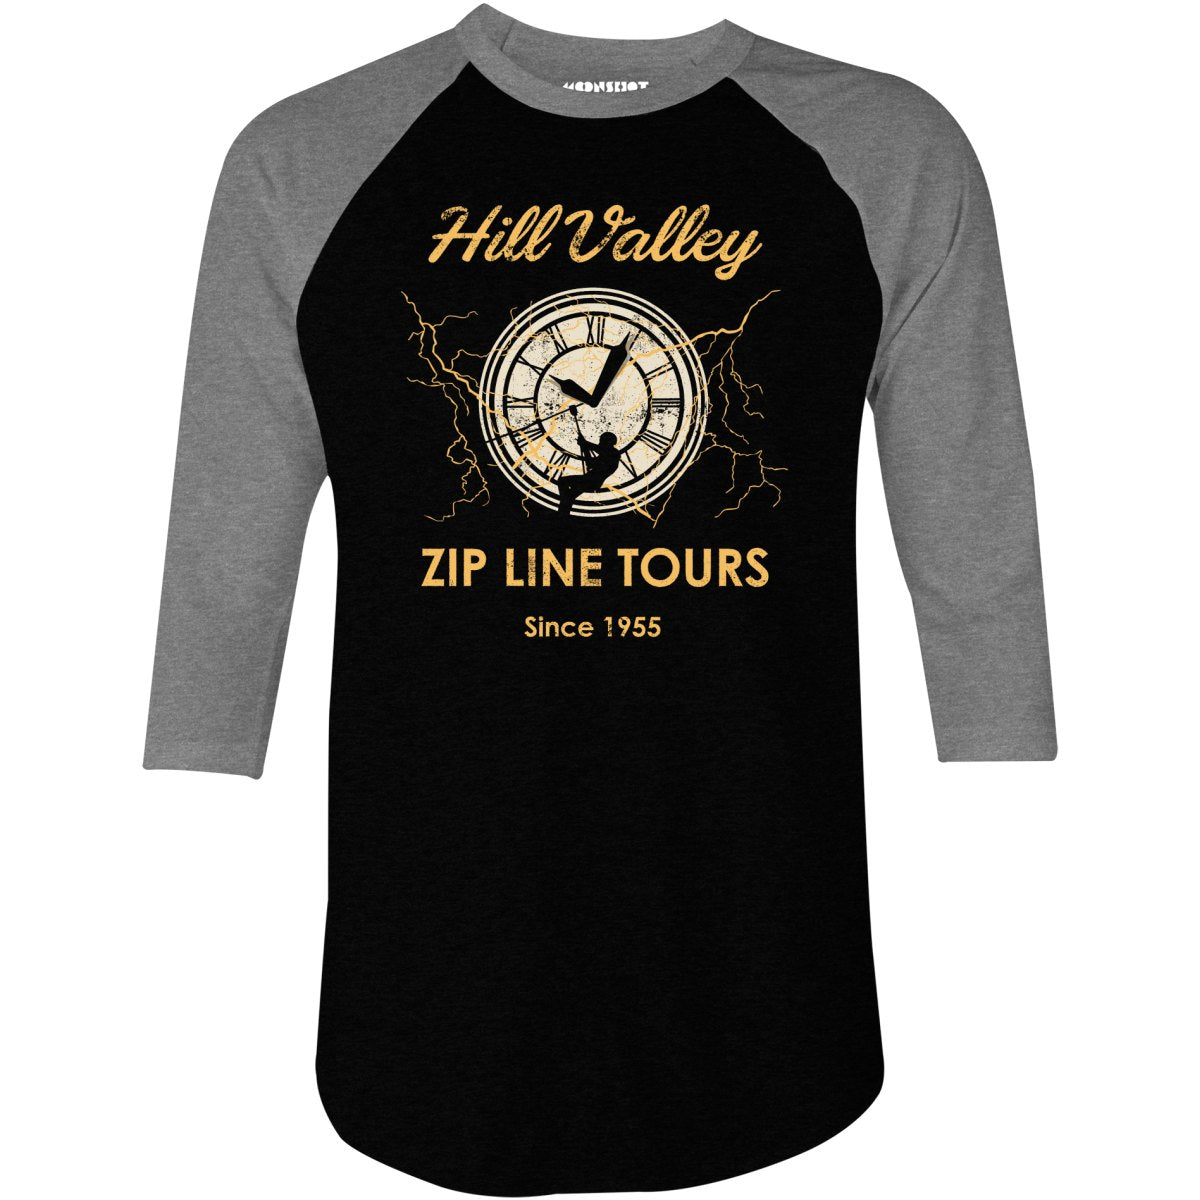 Hill Valley Zip Line Tours - 3/4 Sleeve Raglan T-Shirt